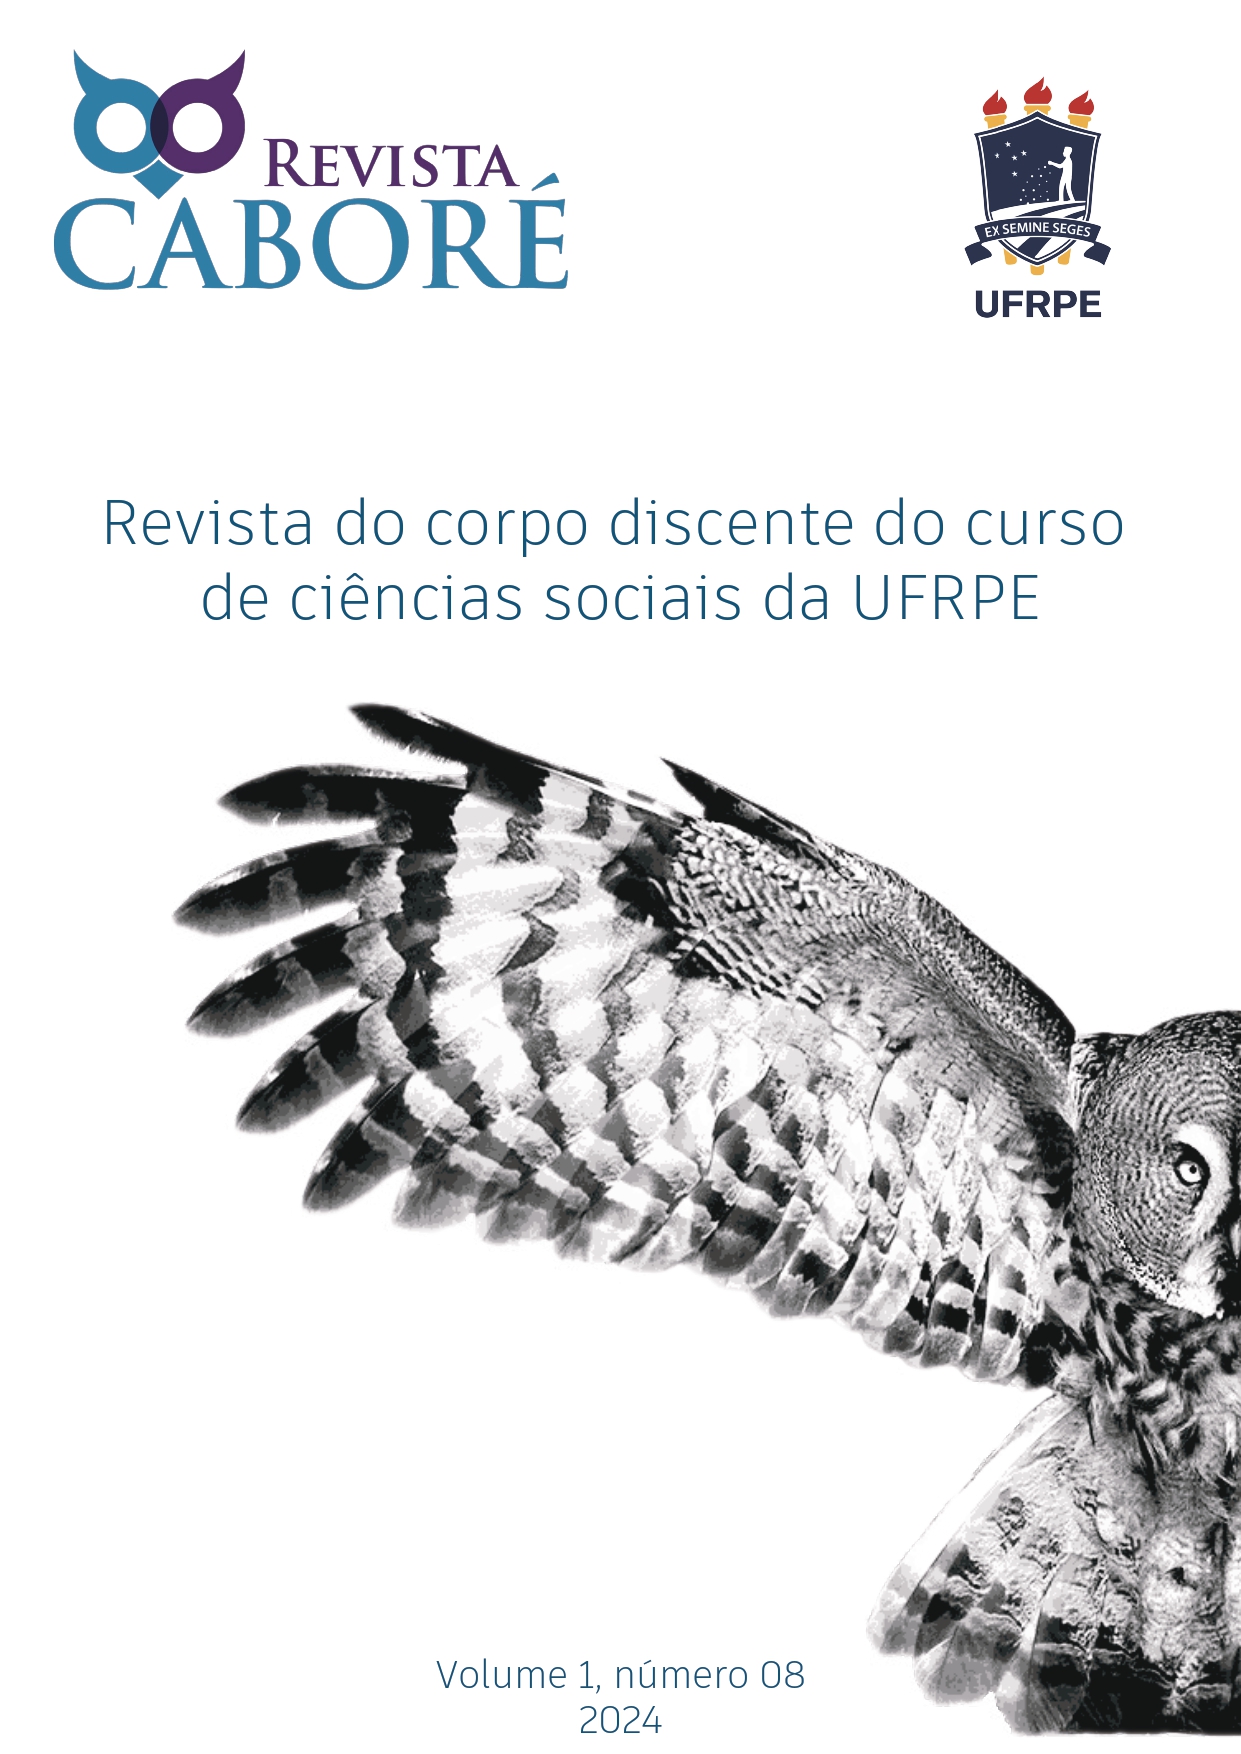 					Ver Vol. 1 Núm. 8 (2024): Revista Caboré
				